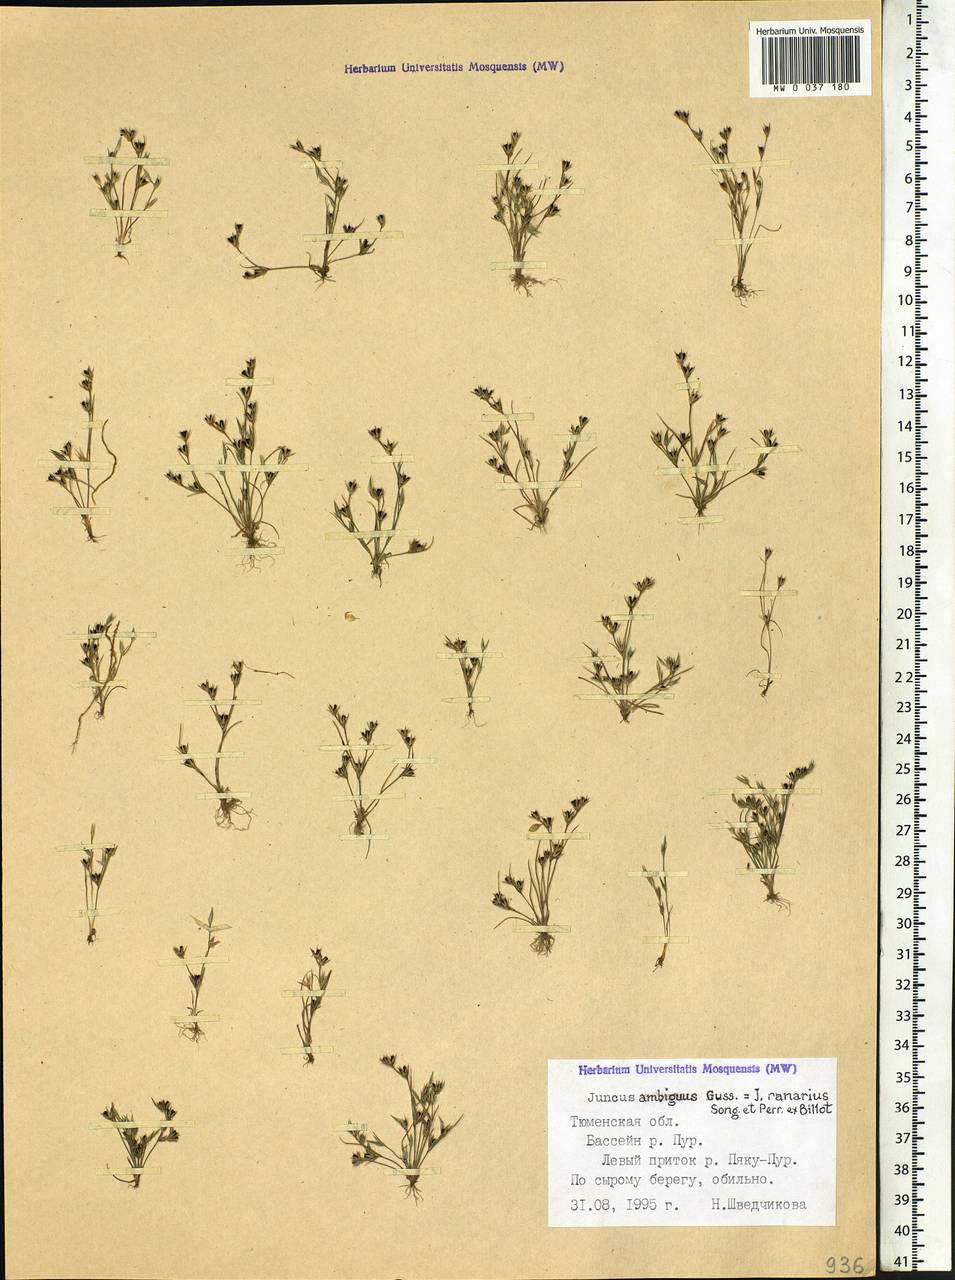 Juncus ranarius Songeon & E. P. Perrier, Siberia, Western Siberia (S1) (Russia)